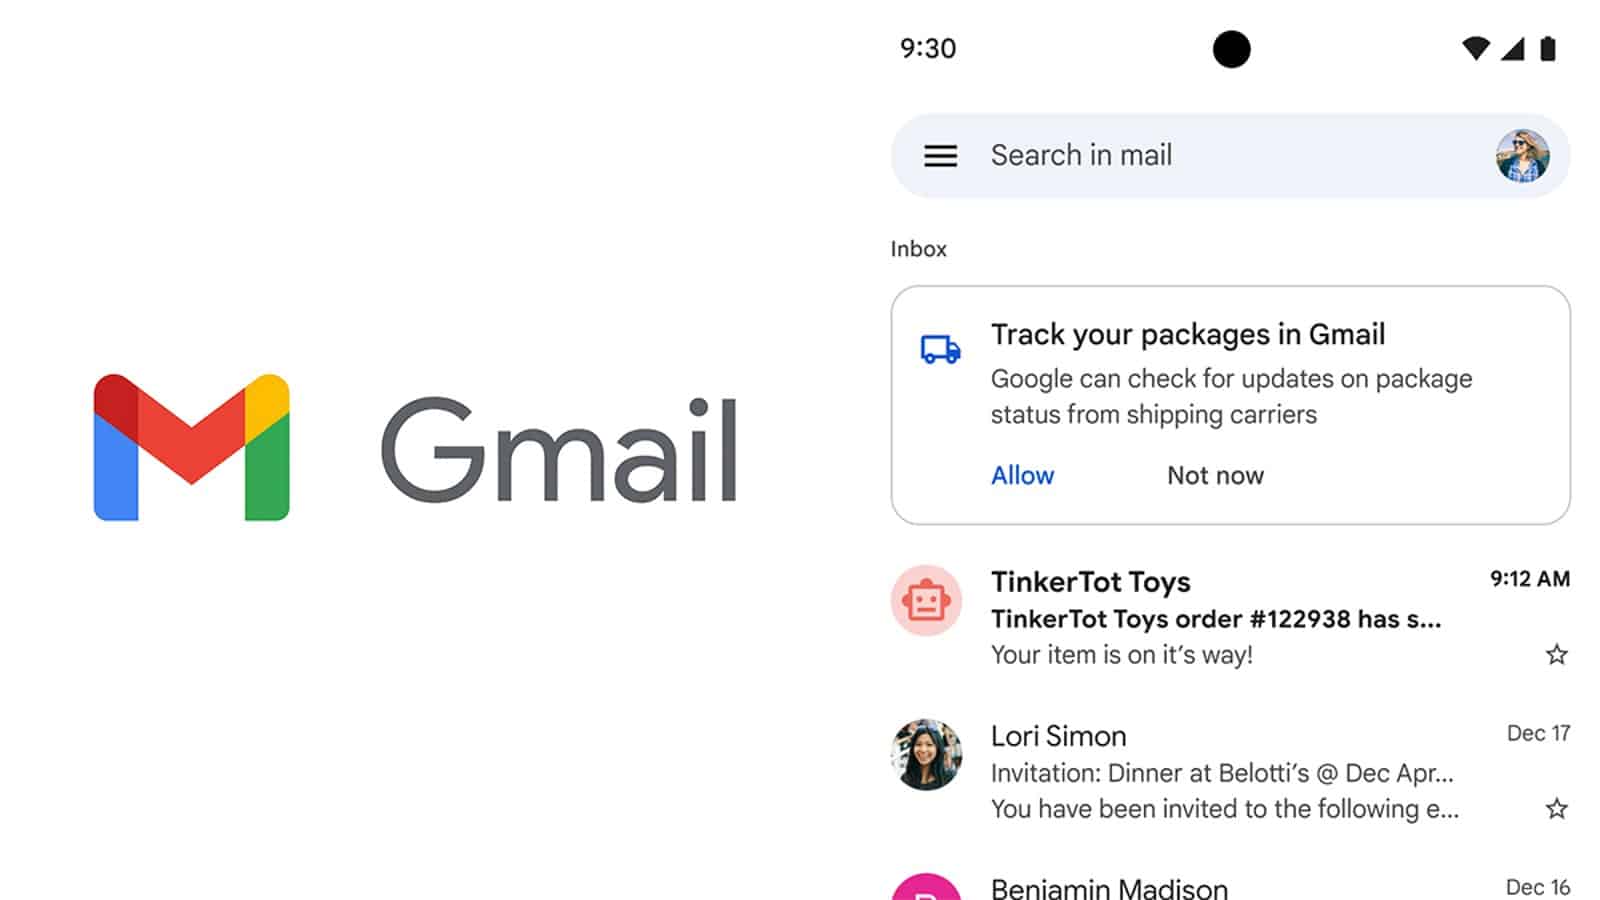 Το Gmail θα παρακολουθεί απευθείας τις παραγγελίες μέσα στo inbox